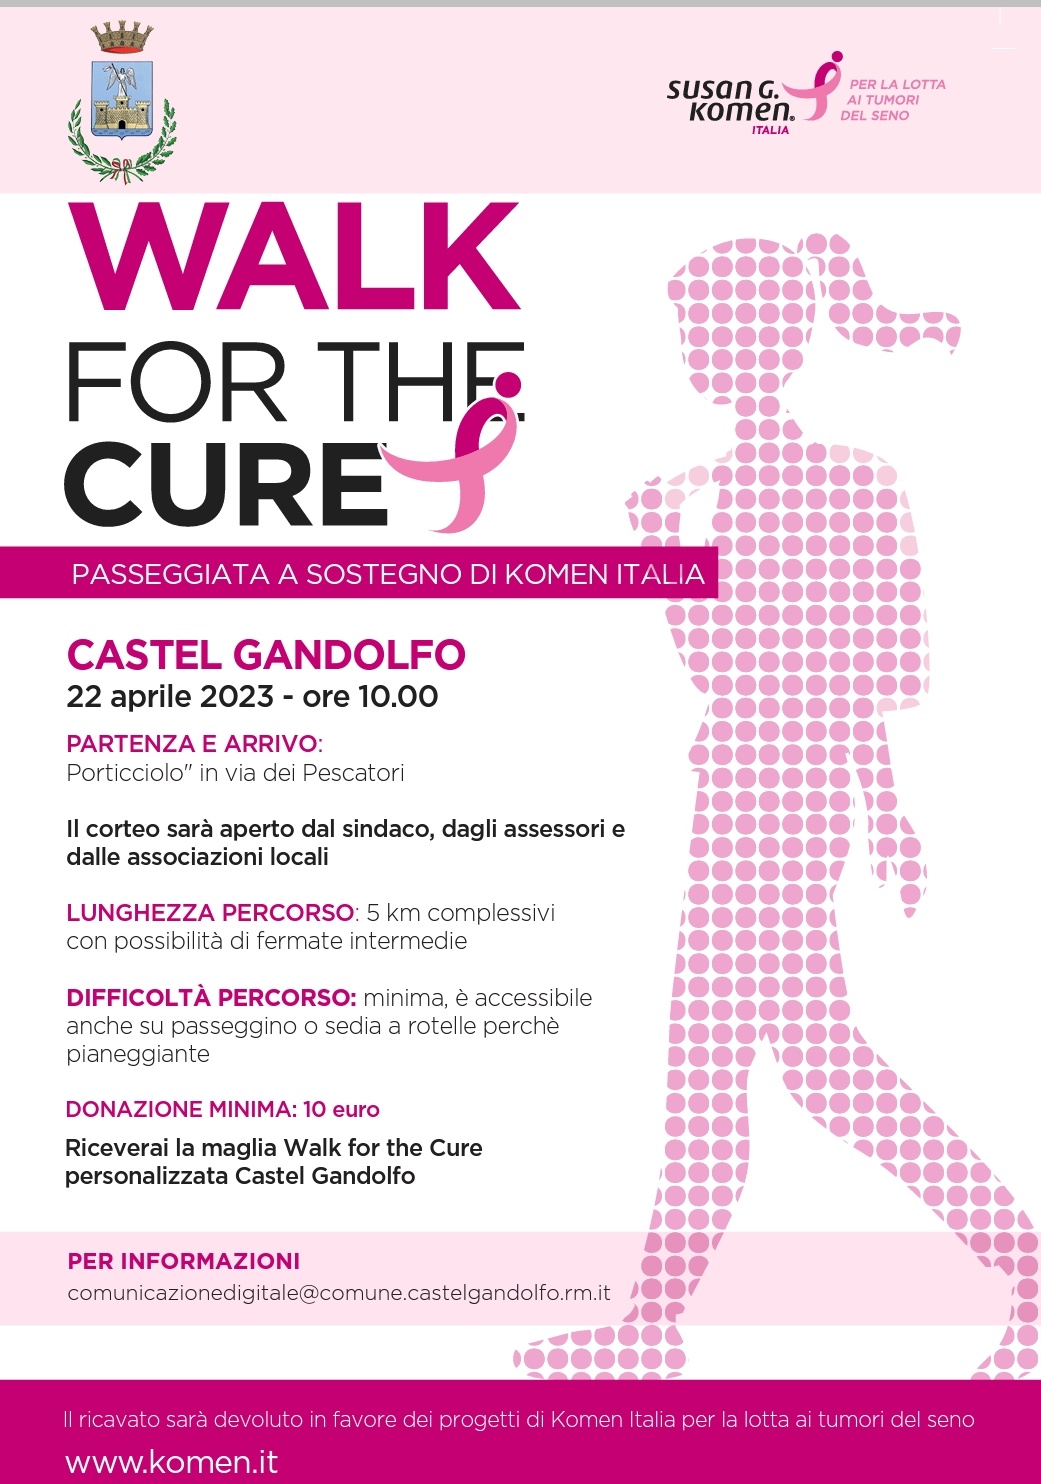 WALK FOR THE CURE CASTEL GANDOLFO